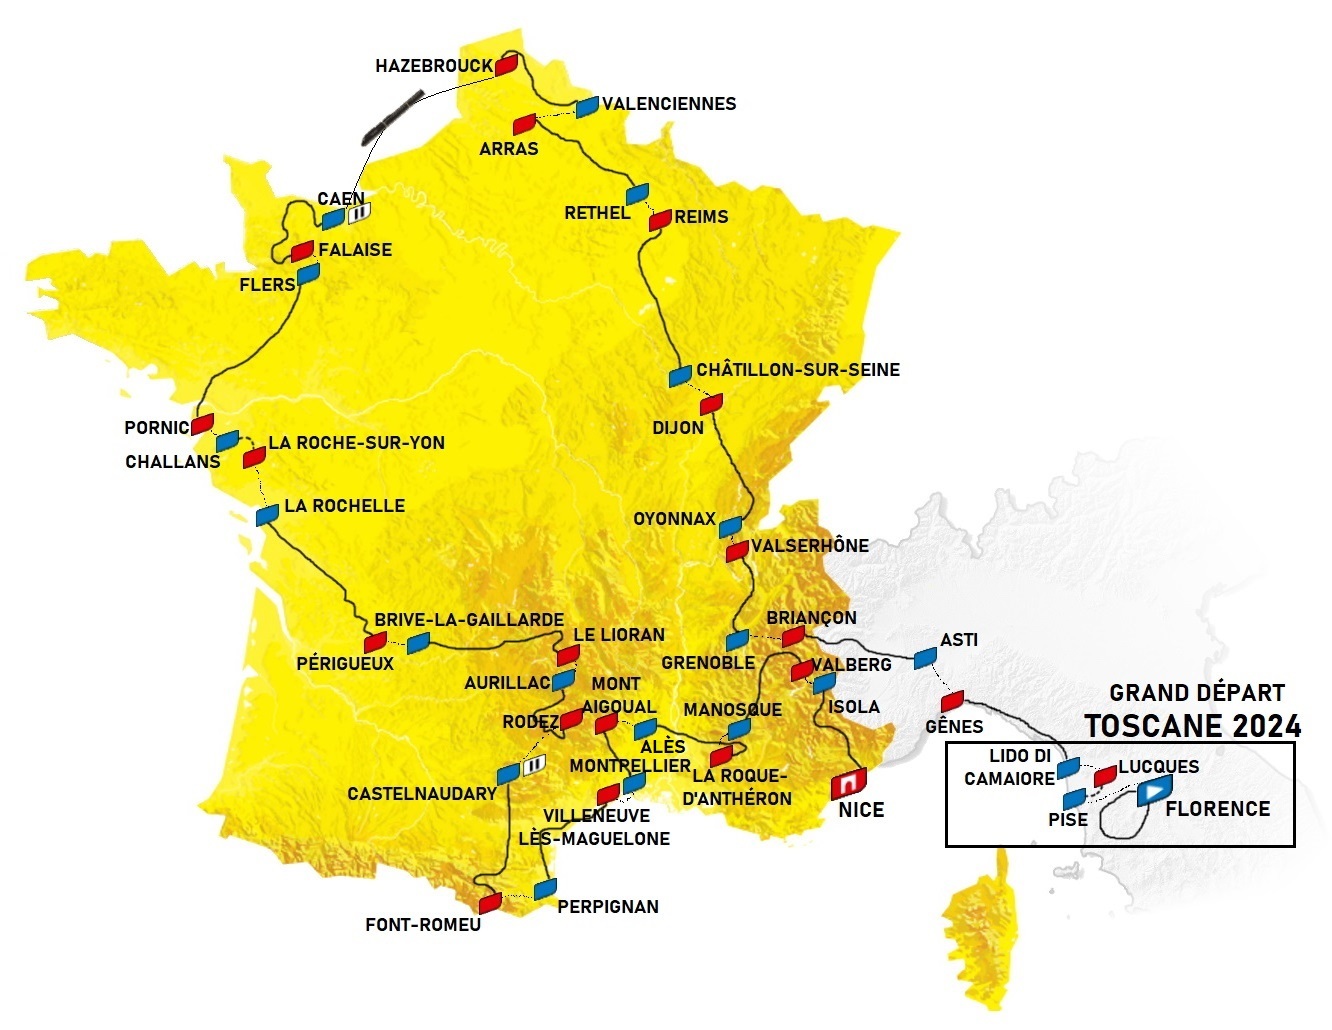 [Concours] Tour de France 2024 Résultats Page 3 Le laboratoire à